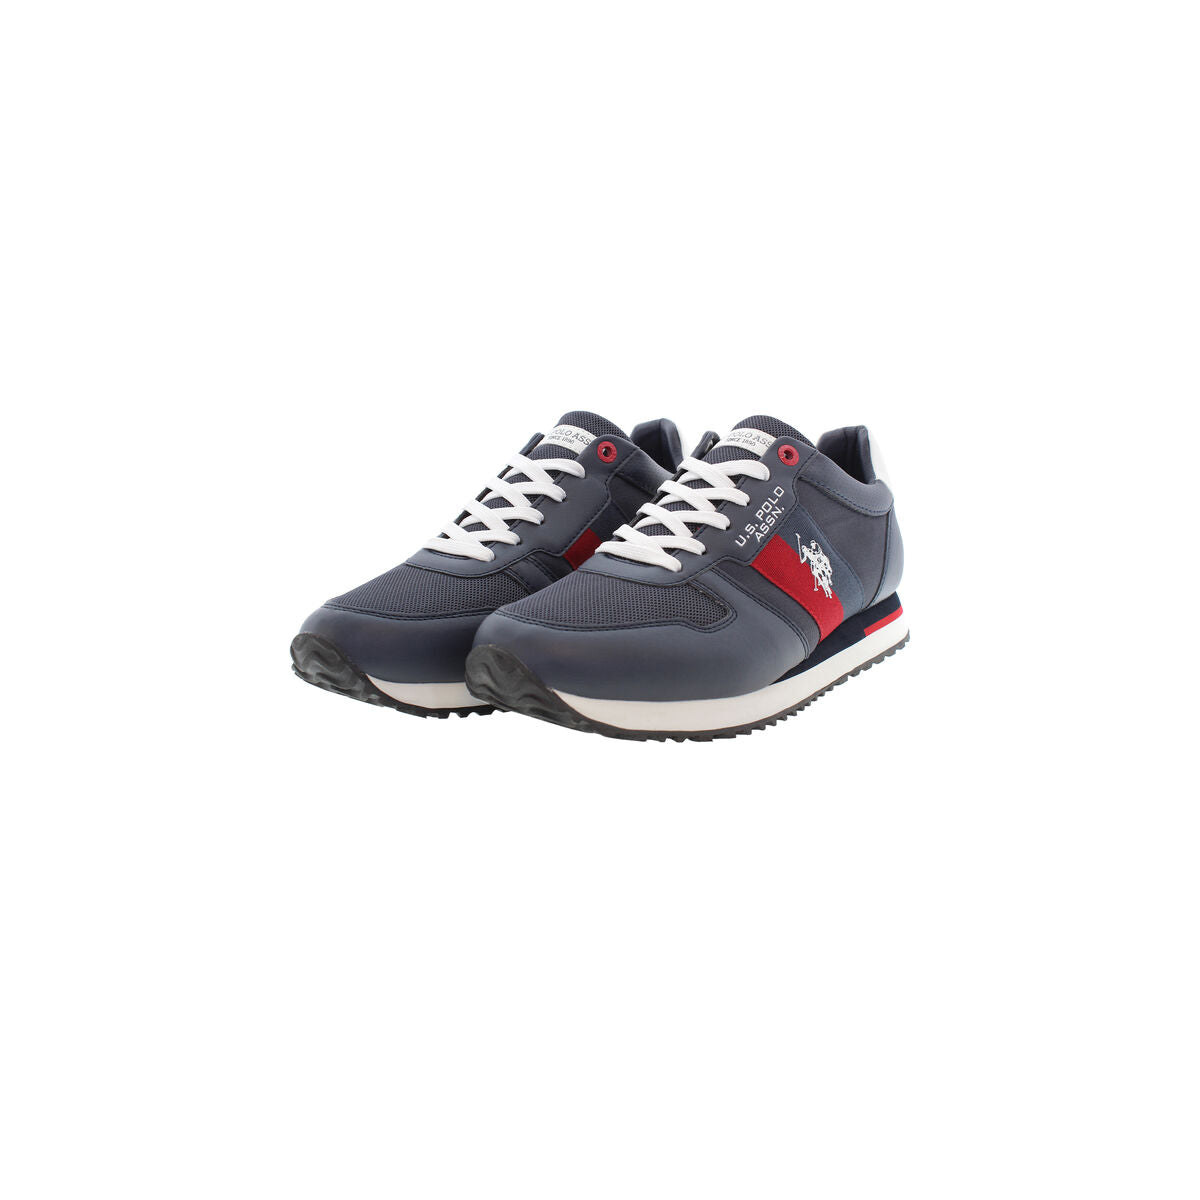 Chaussures de Sport pour Homme U.S. Polo Assn. XIRIO007 DBL001 Blue marine - U.S. Polo Assn. - Jardin D'Eyden - jardindeyden.fr